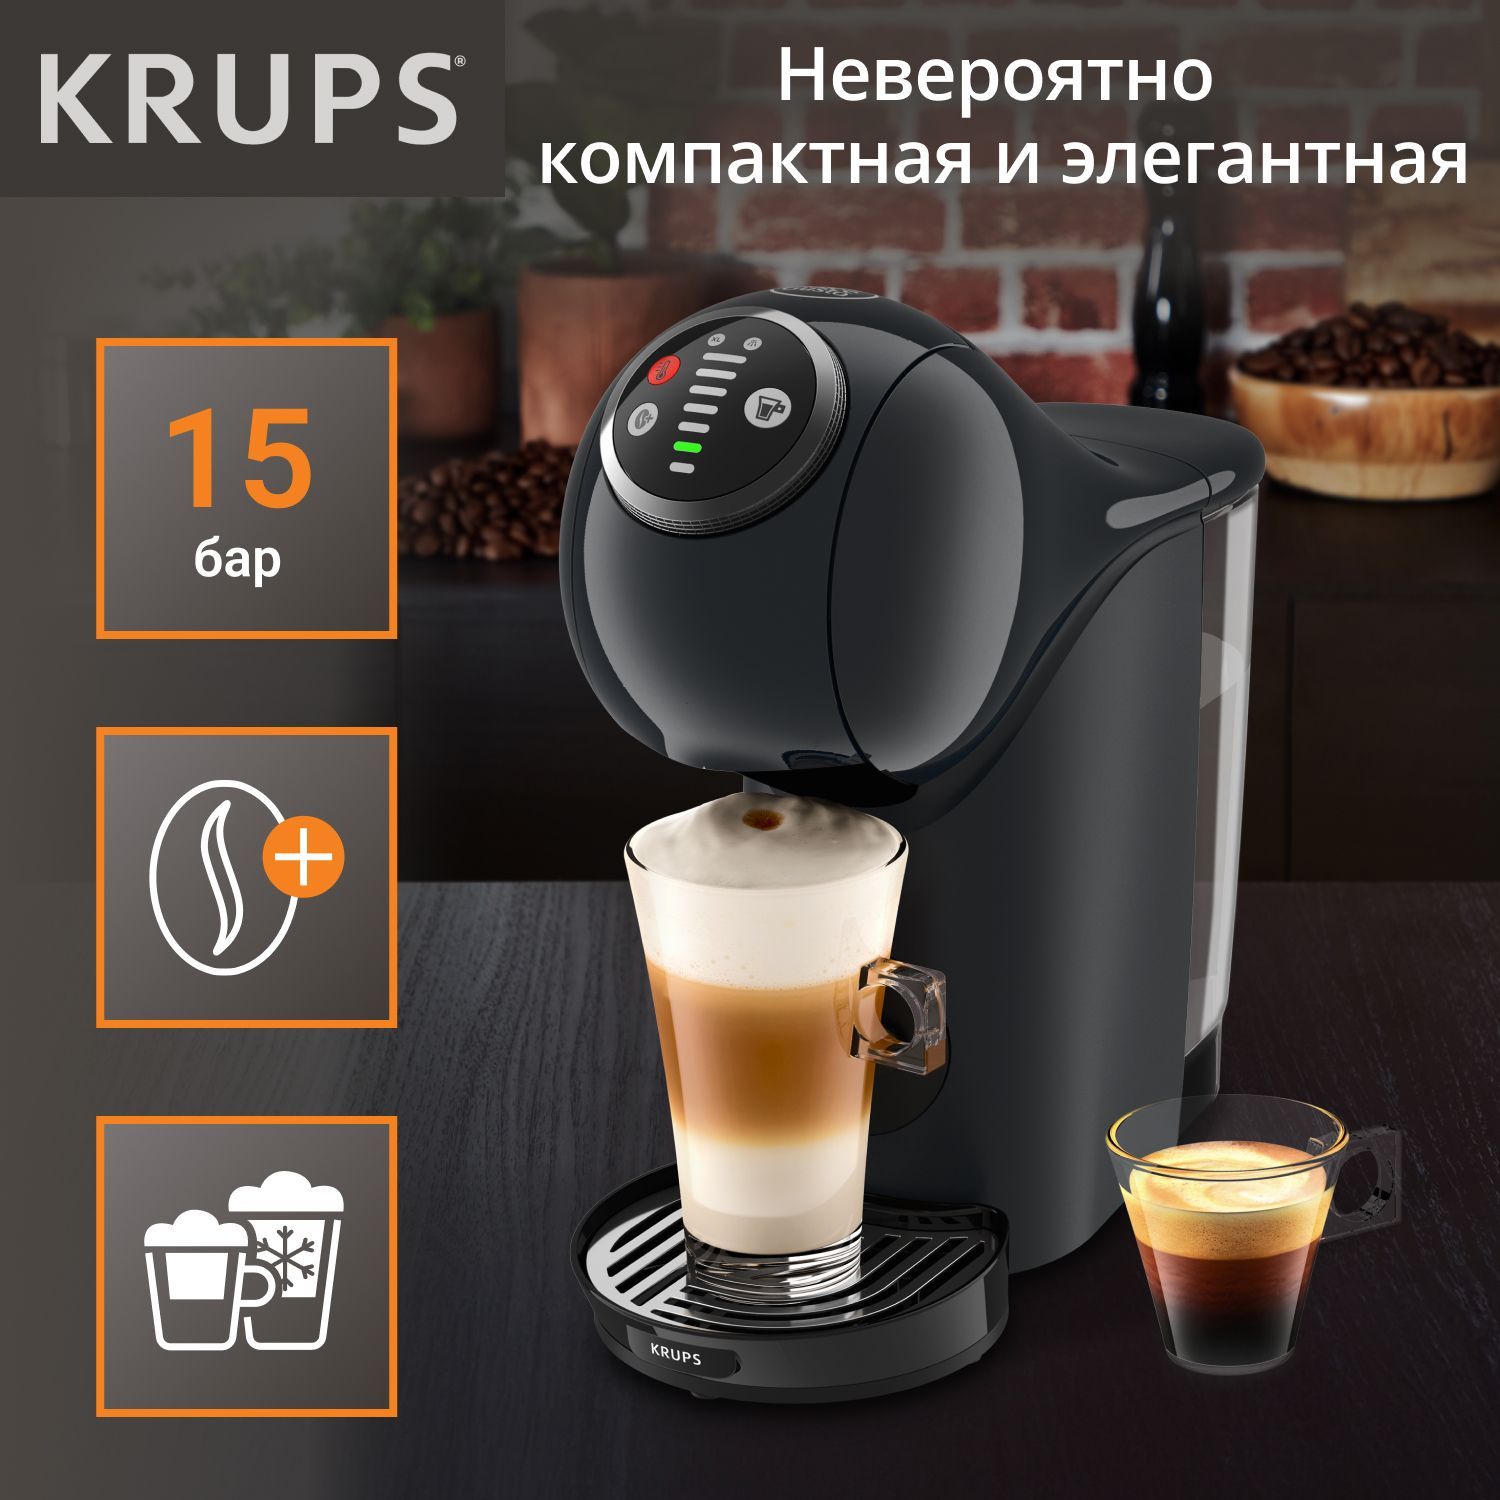 Кофеварка Капсульная Krups Nescafe Dolce Gusto Genio S Plus Kp340810 –  купить в интернет-магазине OZON по низкой цене